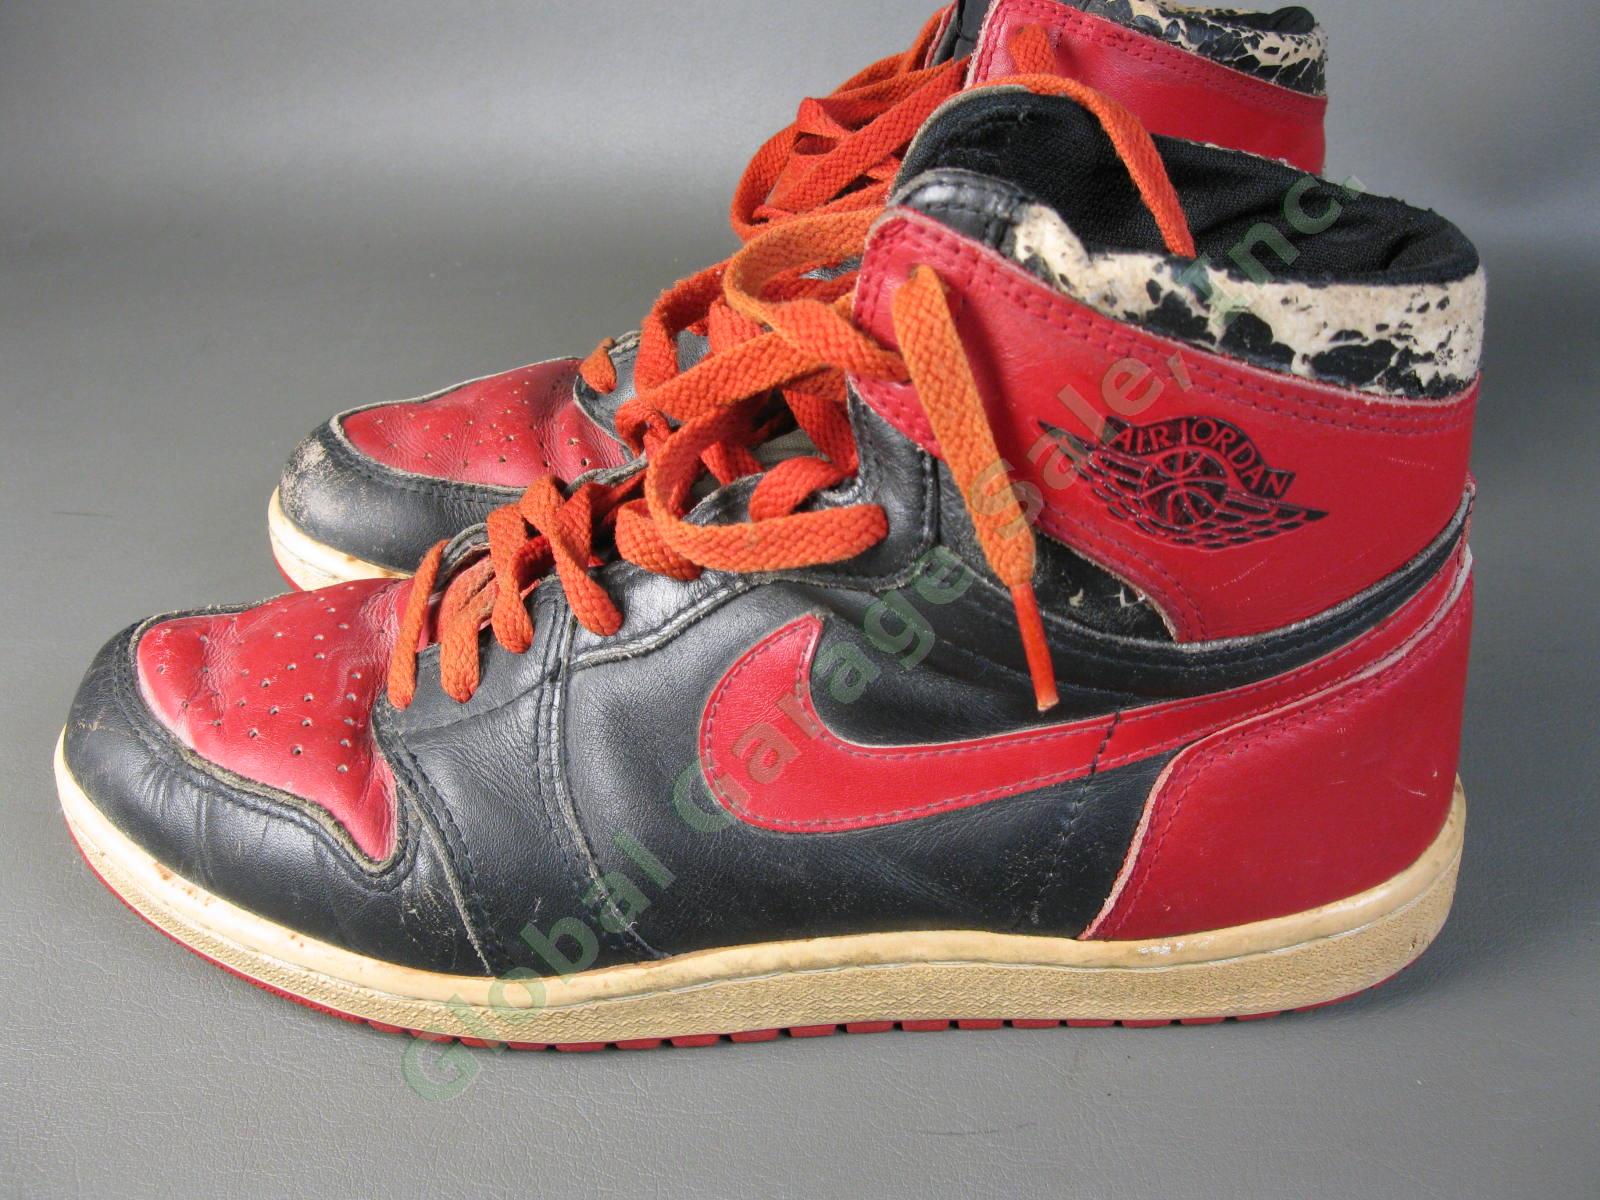 ORIGINAL 1985 Nike Air Jordan 1 Bred Black Red Chicago Bulls BANNED OG MJ AJI NR 15